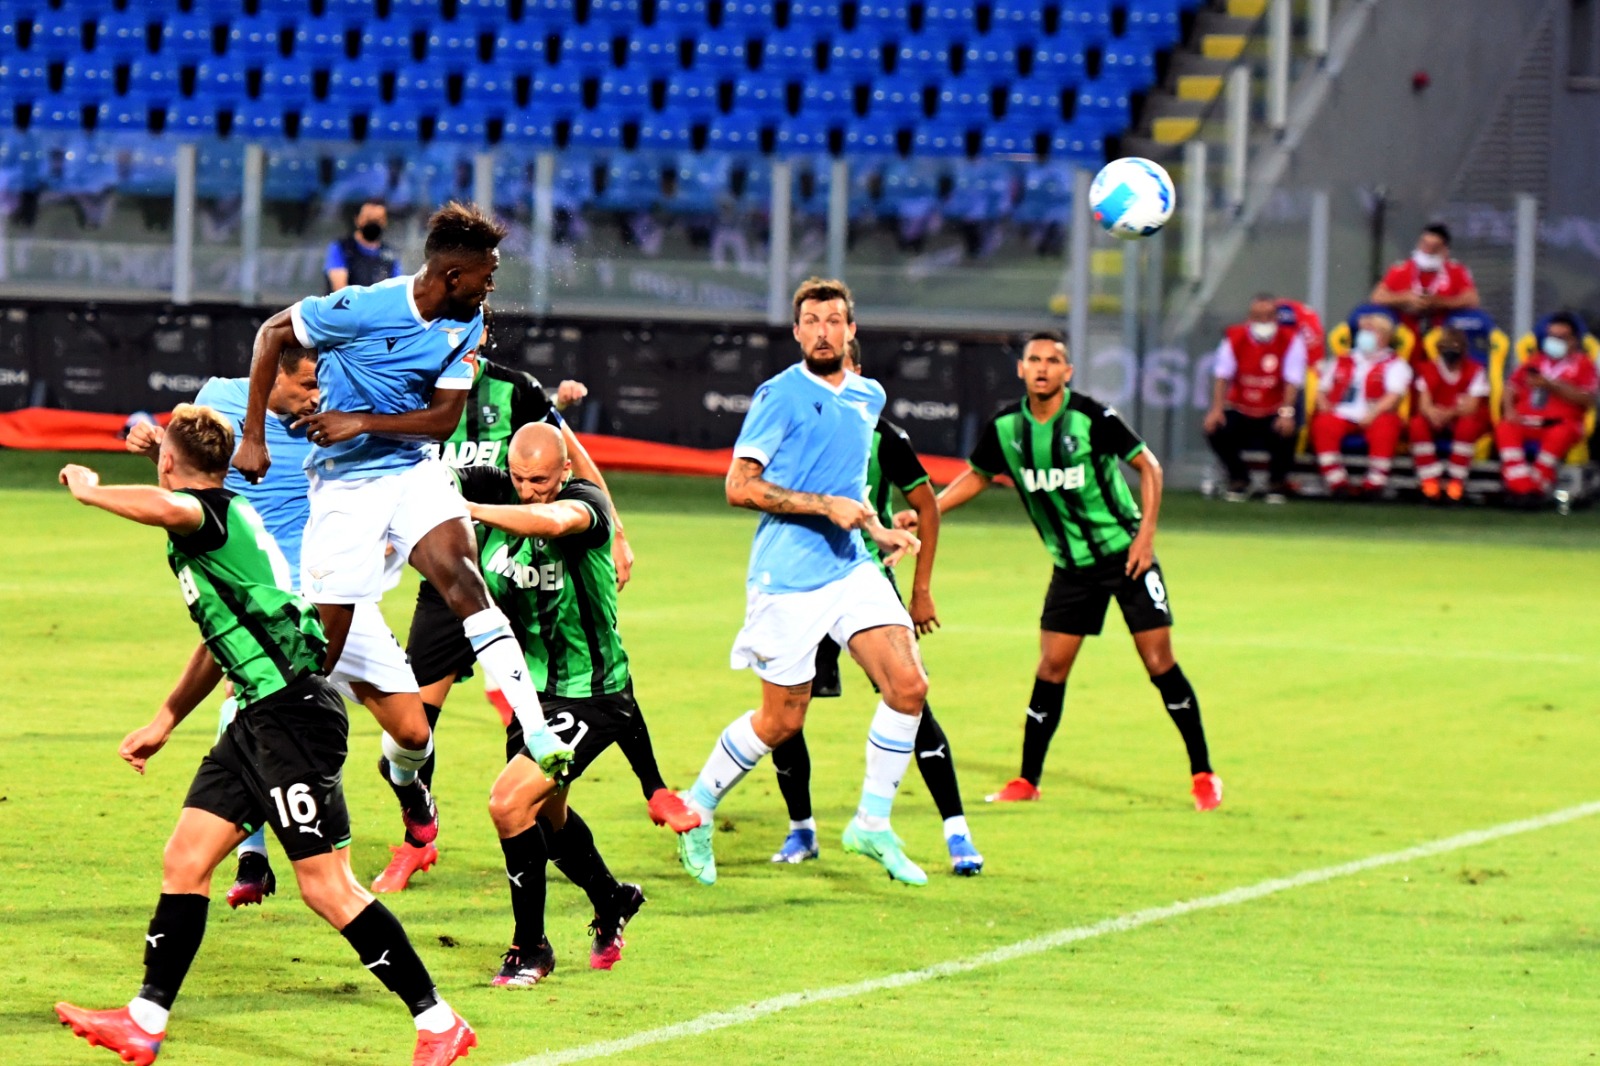 FOTOGALLERY | Amichevole, Lazio-Sassuolo 1-1: il match negli scatti di Antonio FRAIOLI